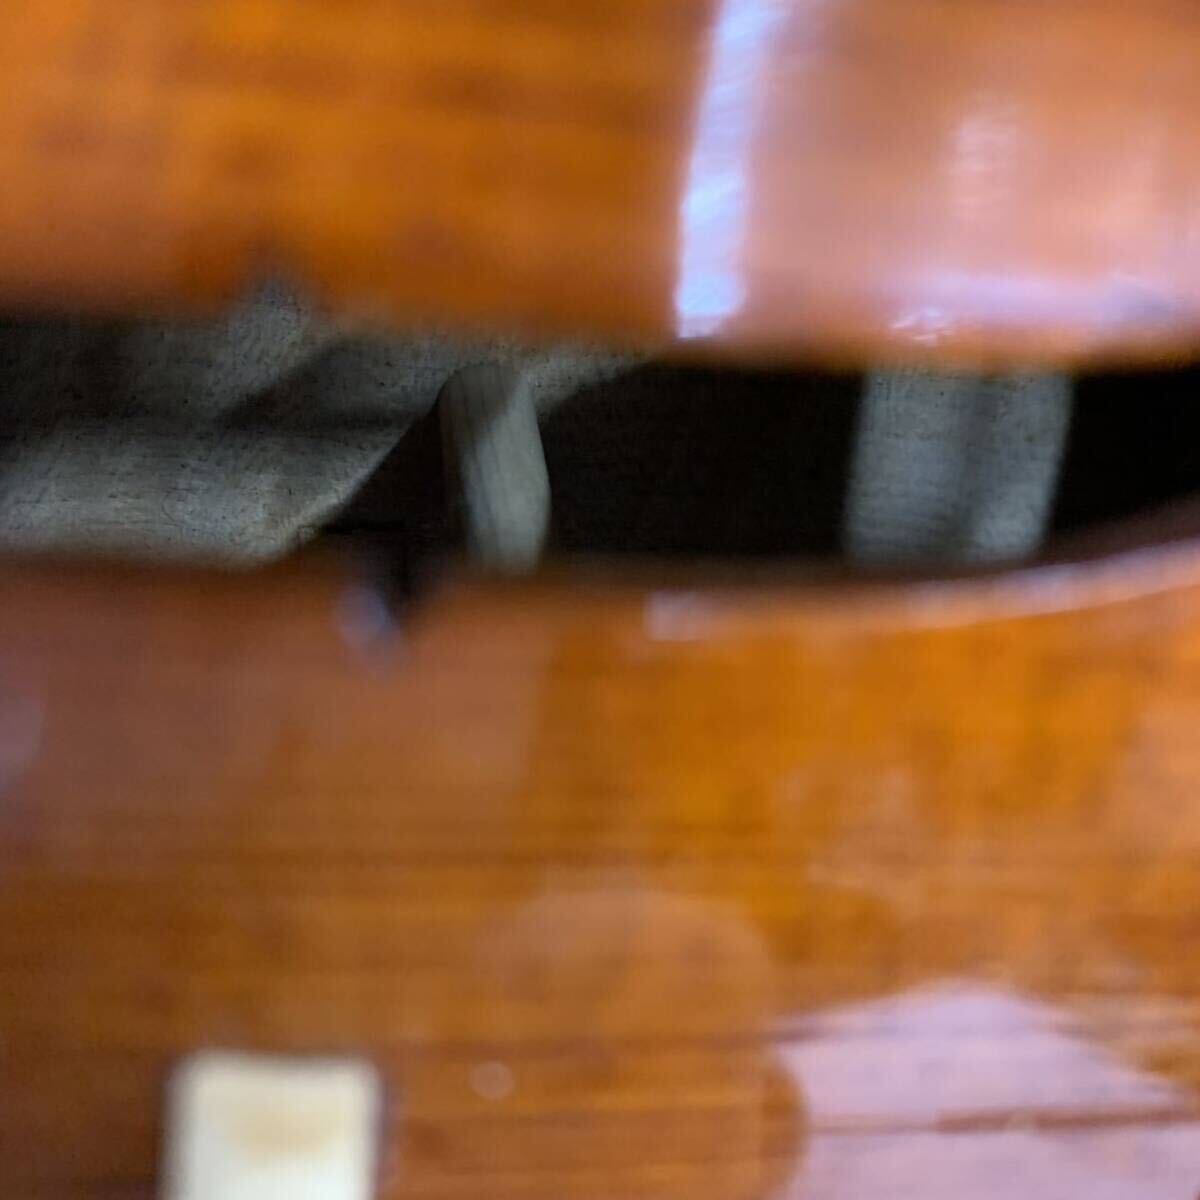 【P-2】 名称不明 バイオリン ファスナー破損 キズあり 汚れあり 中古品 1394-45の画像5